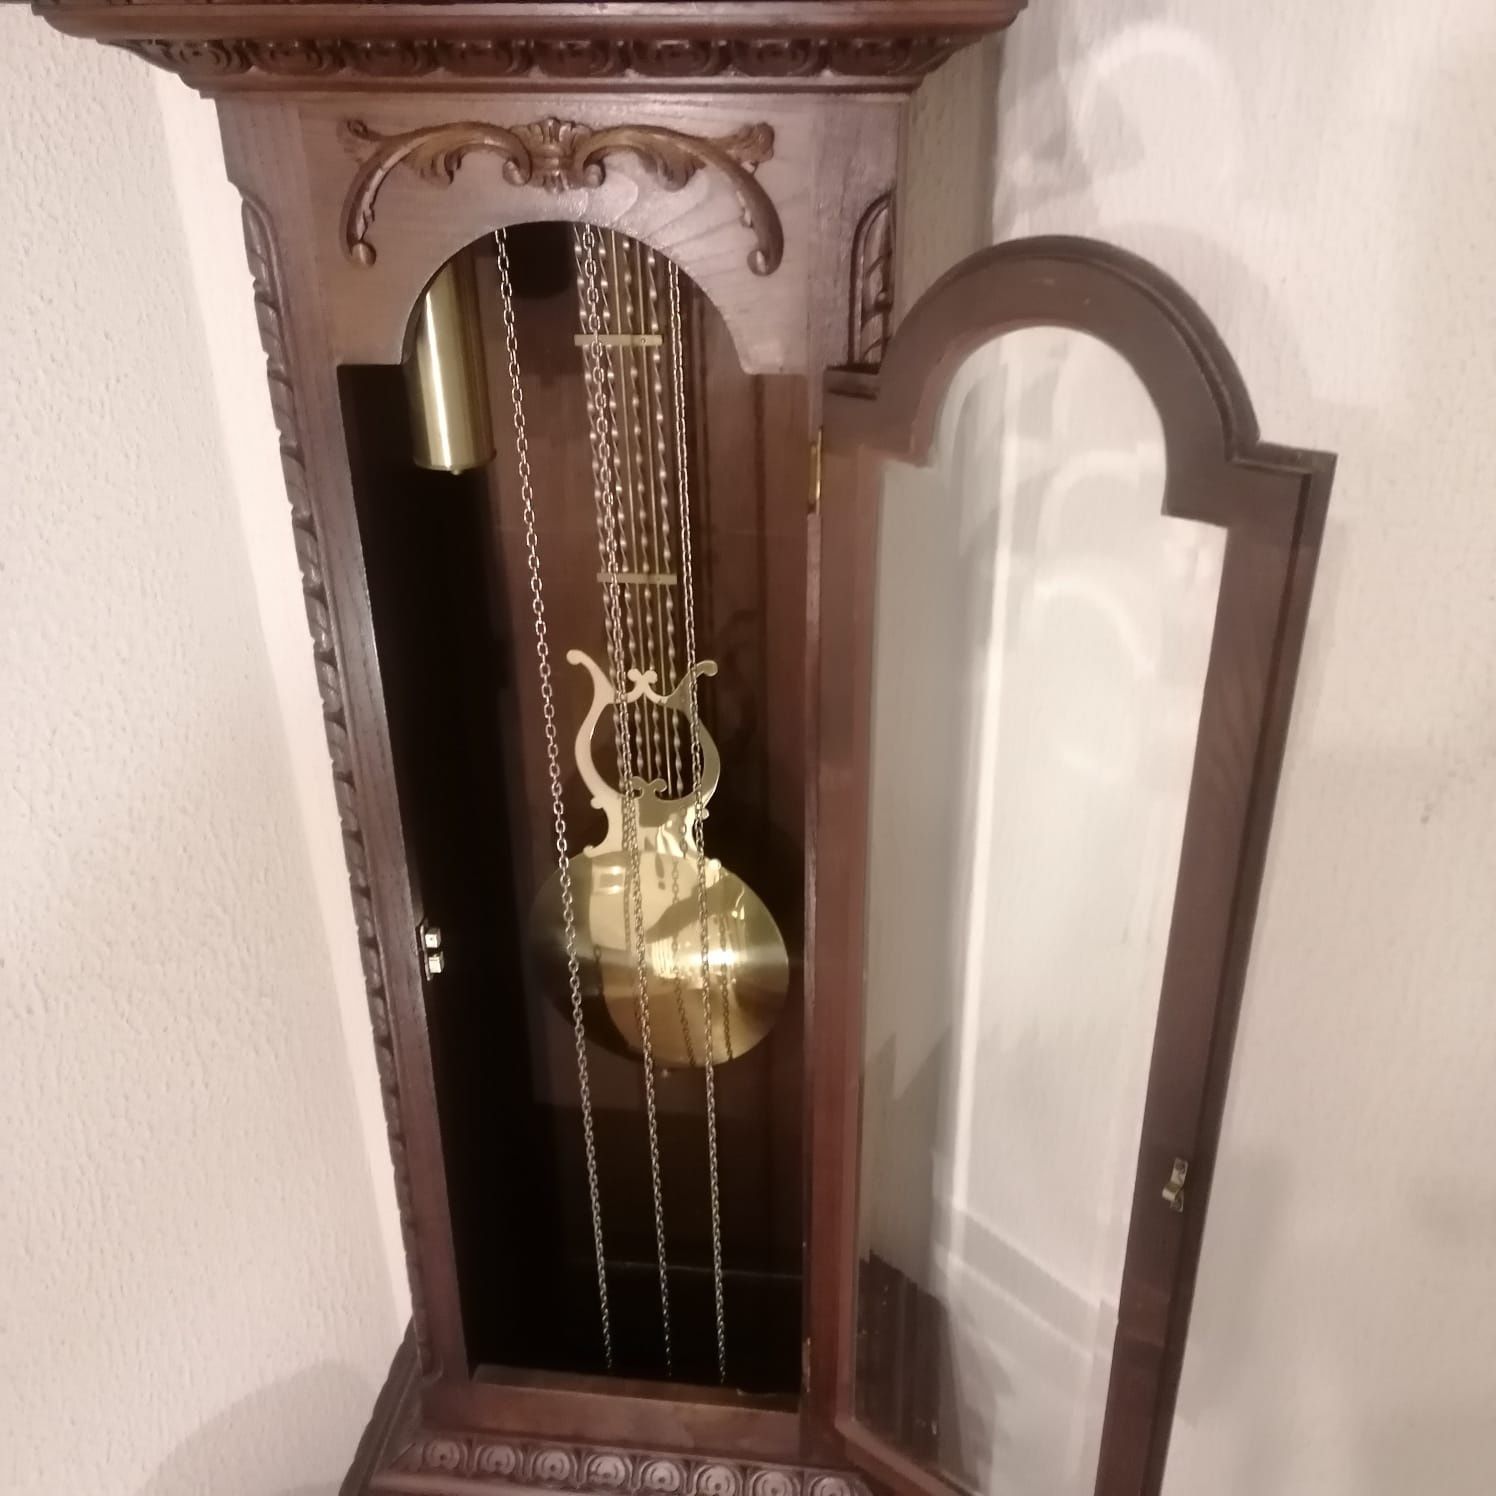 Relógio de pêndulo antigo